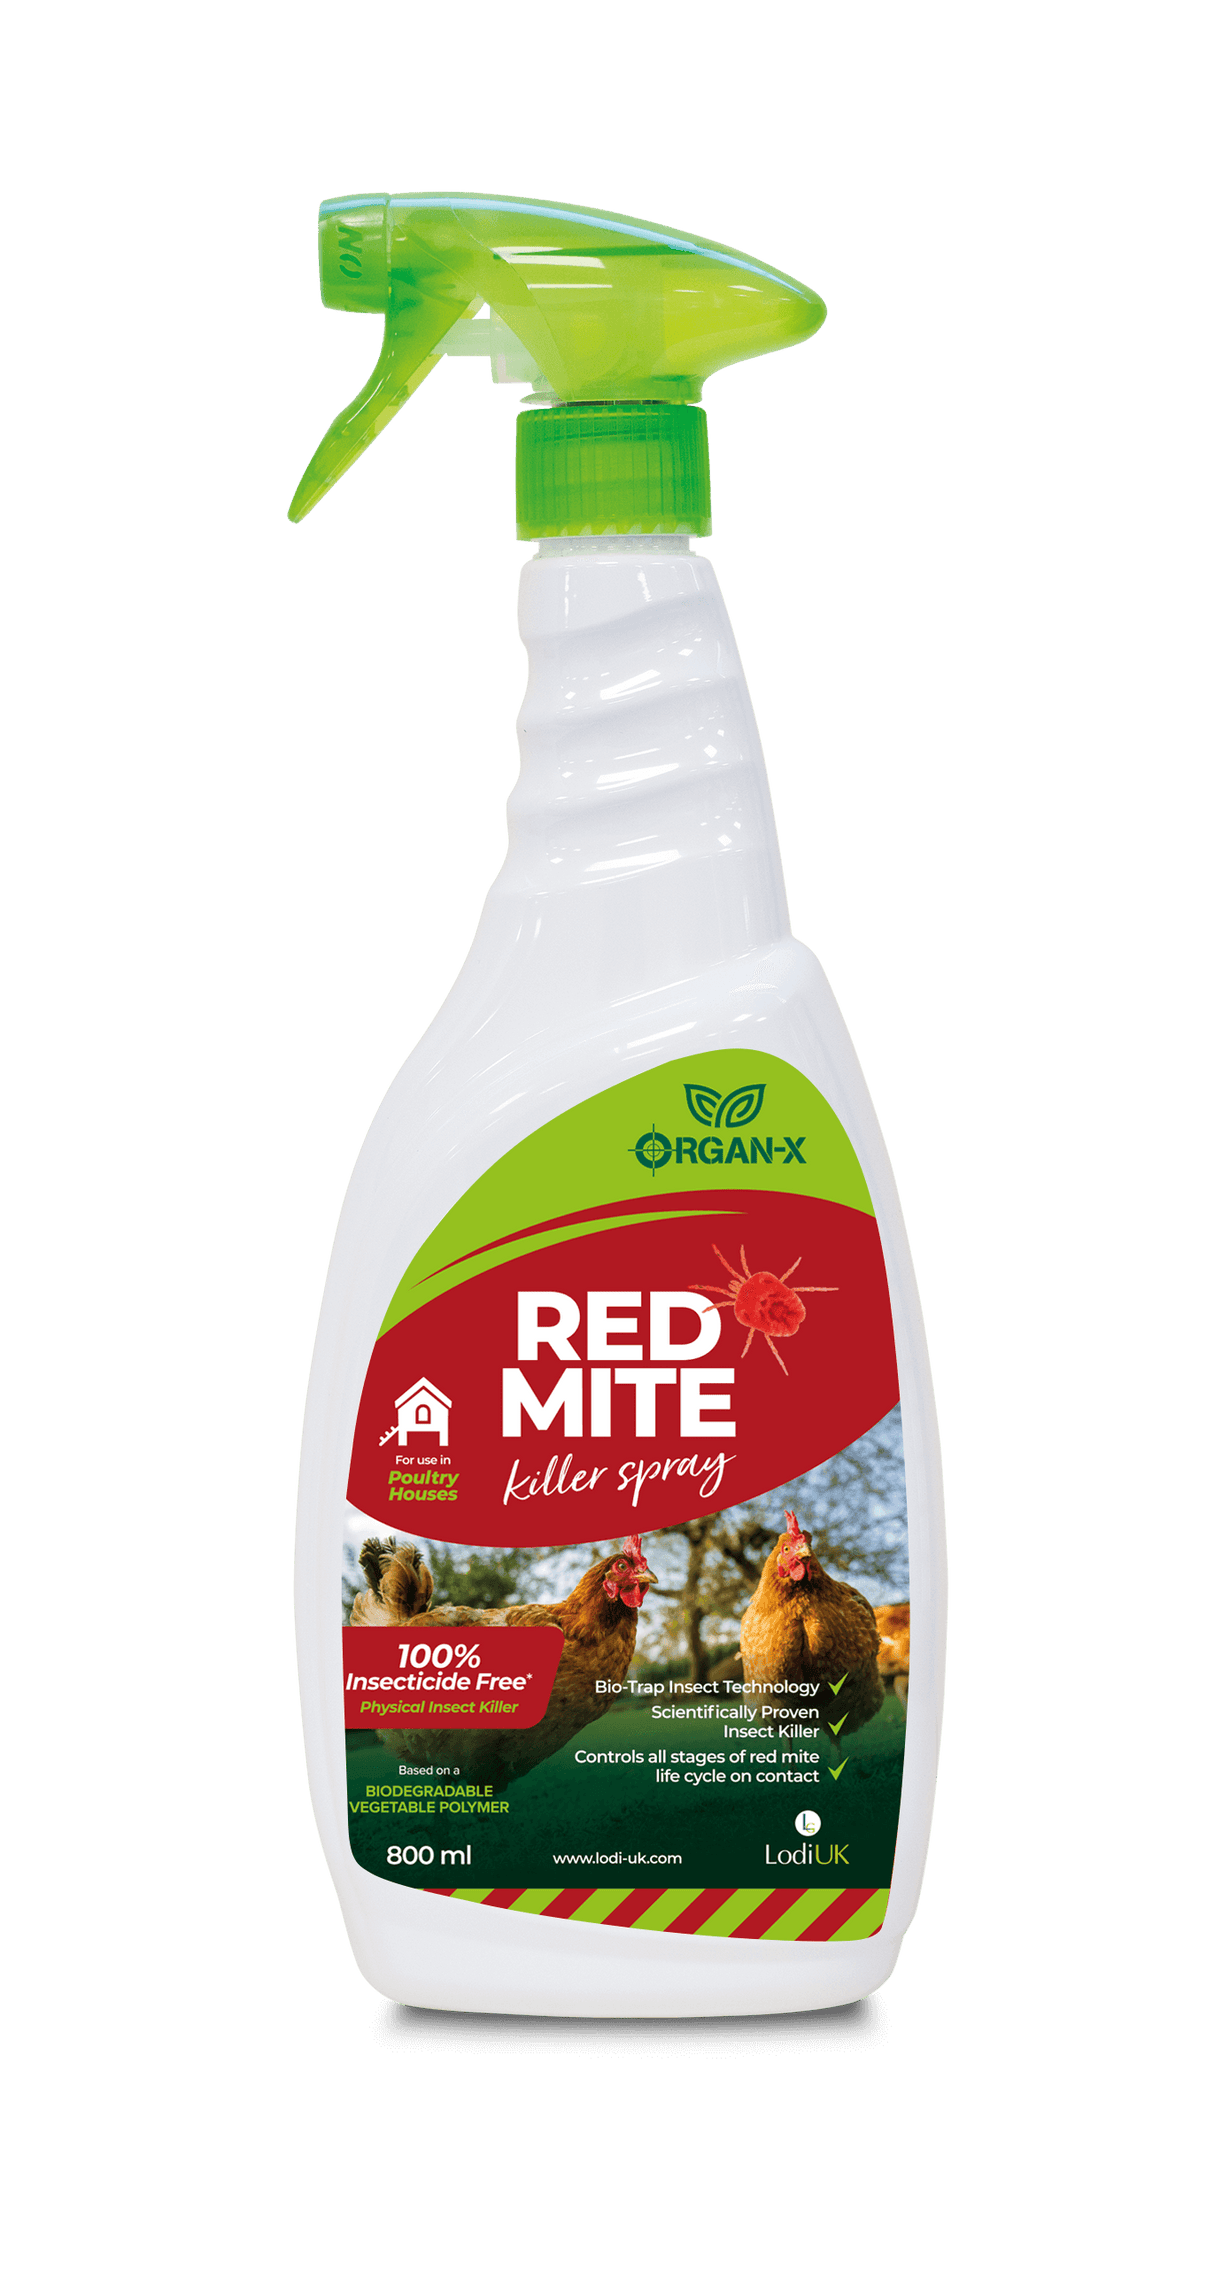 Organ-X Red Mite Killer Spray | 800ml Trigger Spray